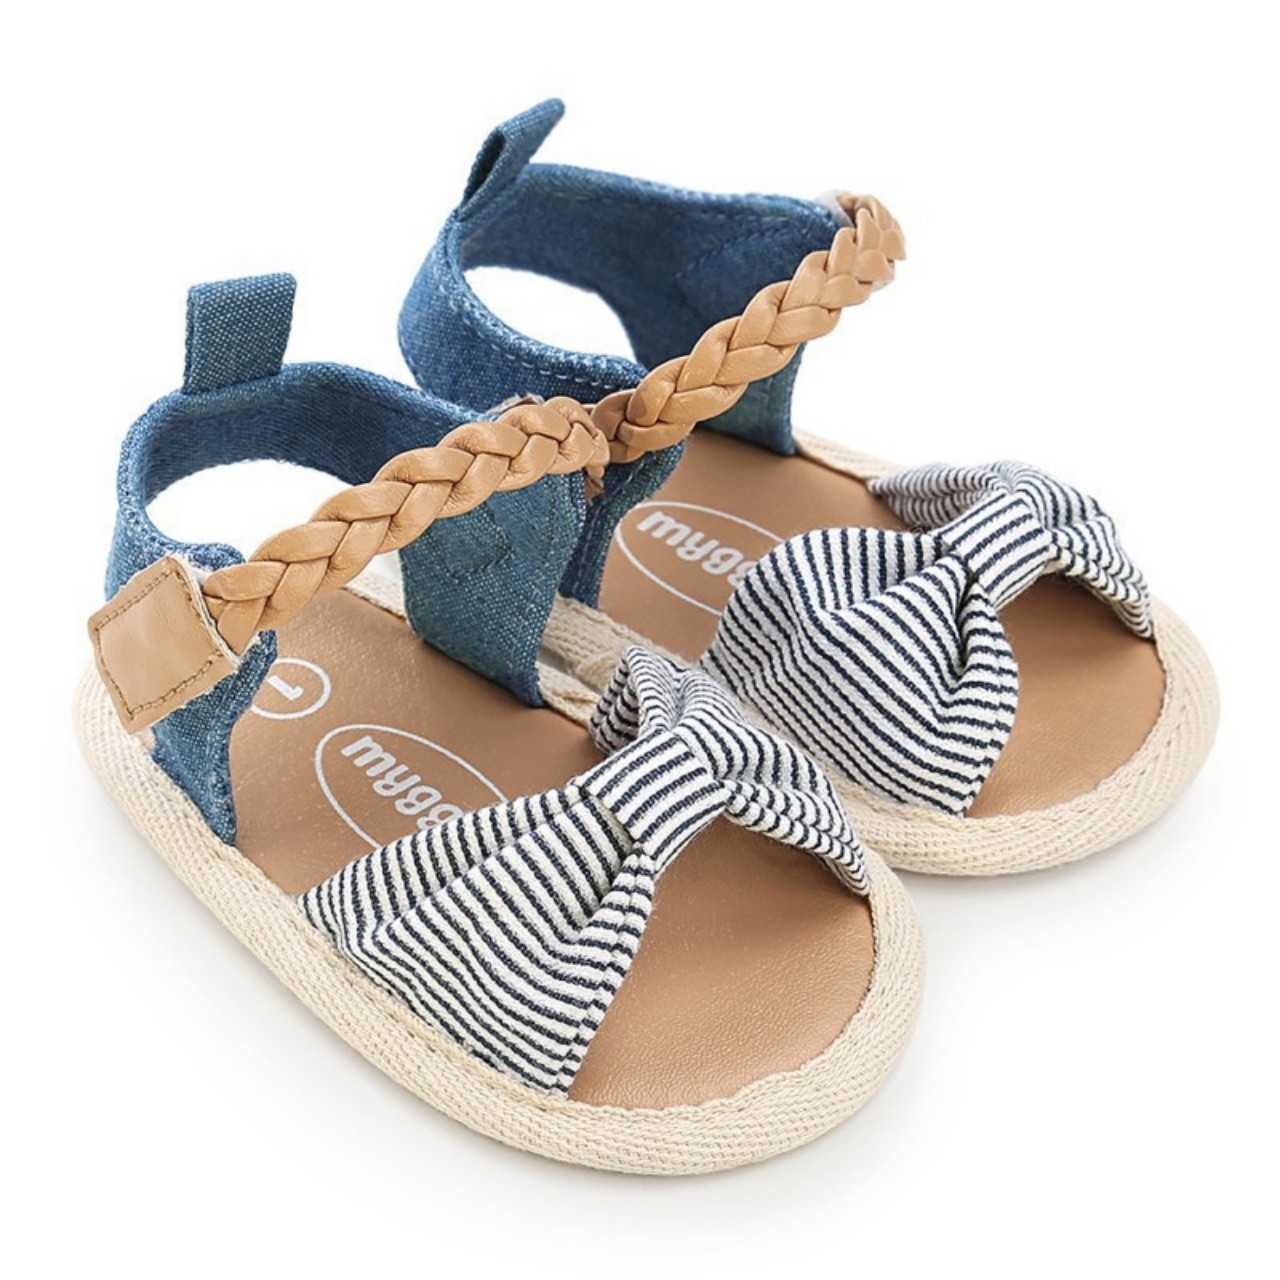 Giày tập đi sandal cho bé 0-18 tháng tuổi quai bện xinh xắn - TD6